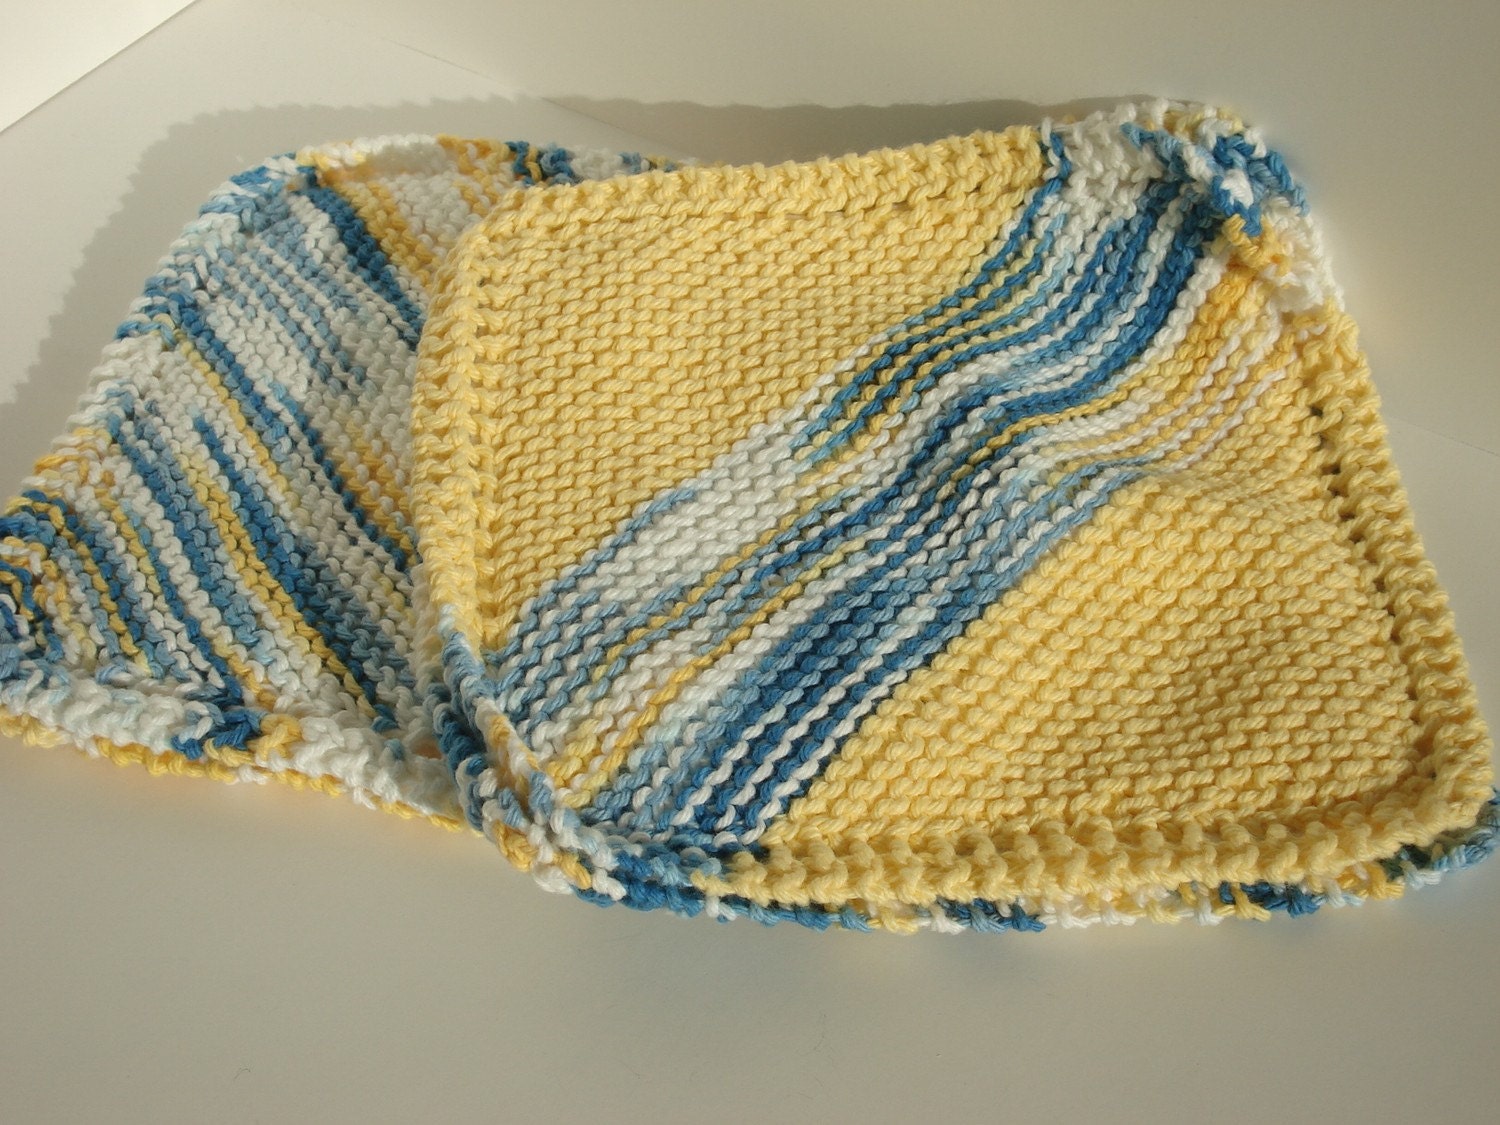 Potholder Trivet Set in Blue & Yellow